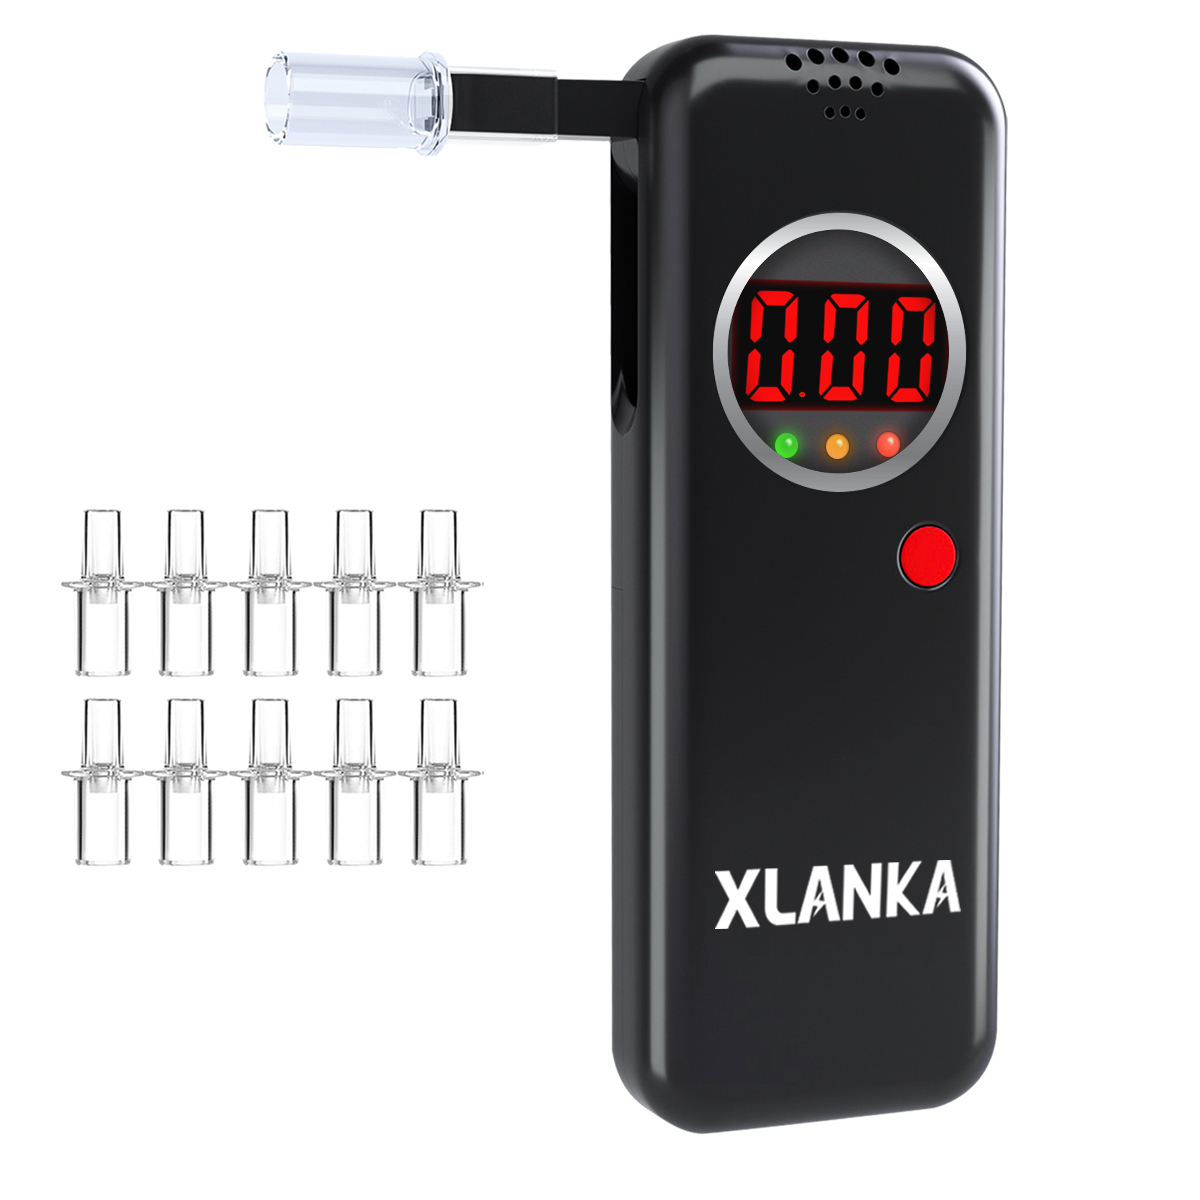 XLANKA LCD Digital Display Breathalyzer